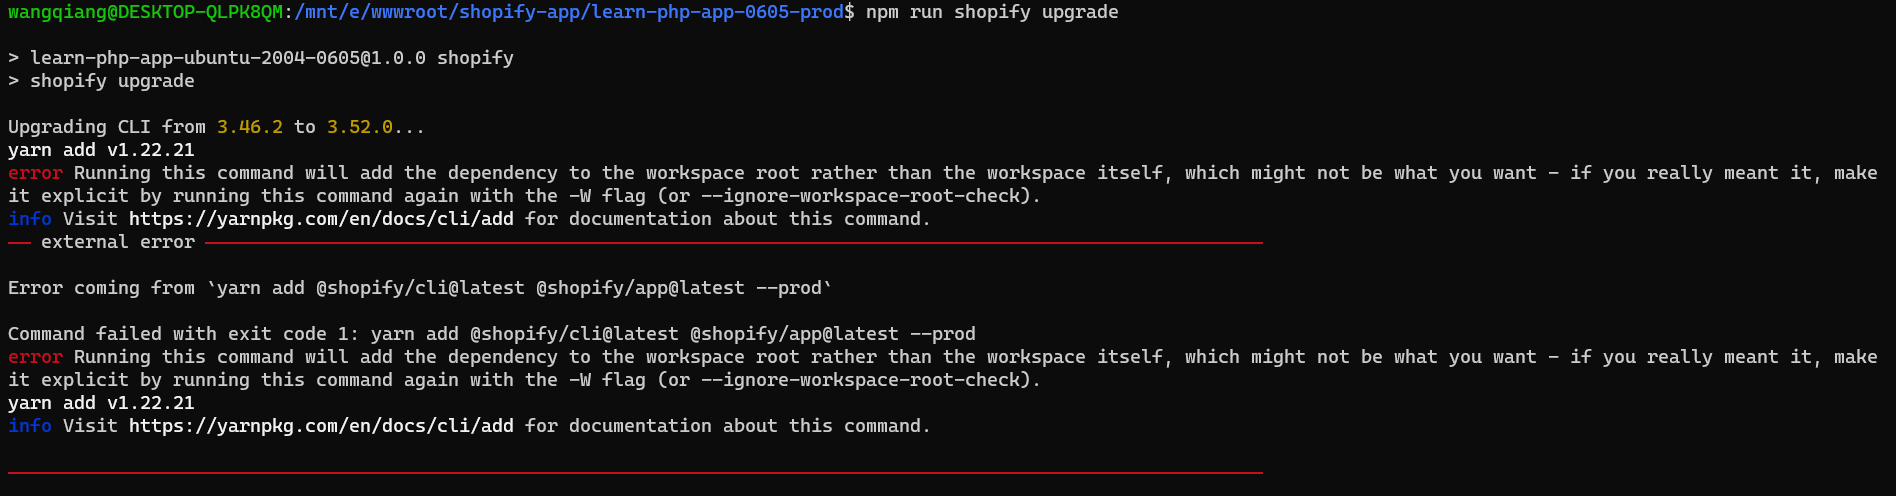 在 运行：npm run shopify version 时，提示：Running this command will add the dependency to the workspace root rather than the workspace itself